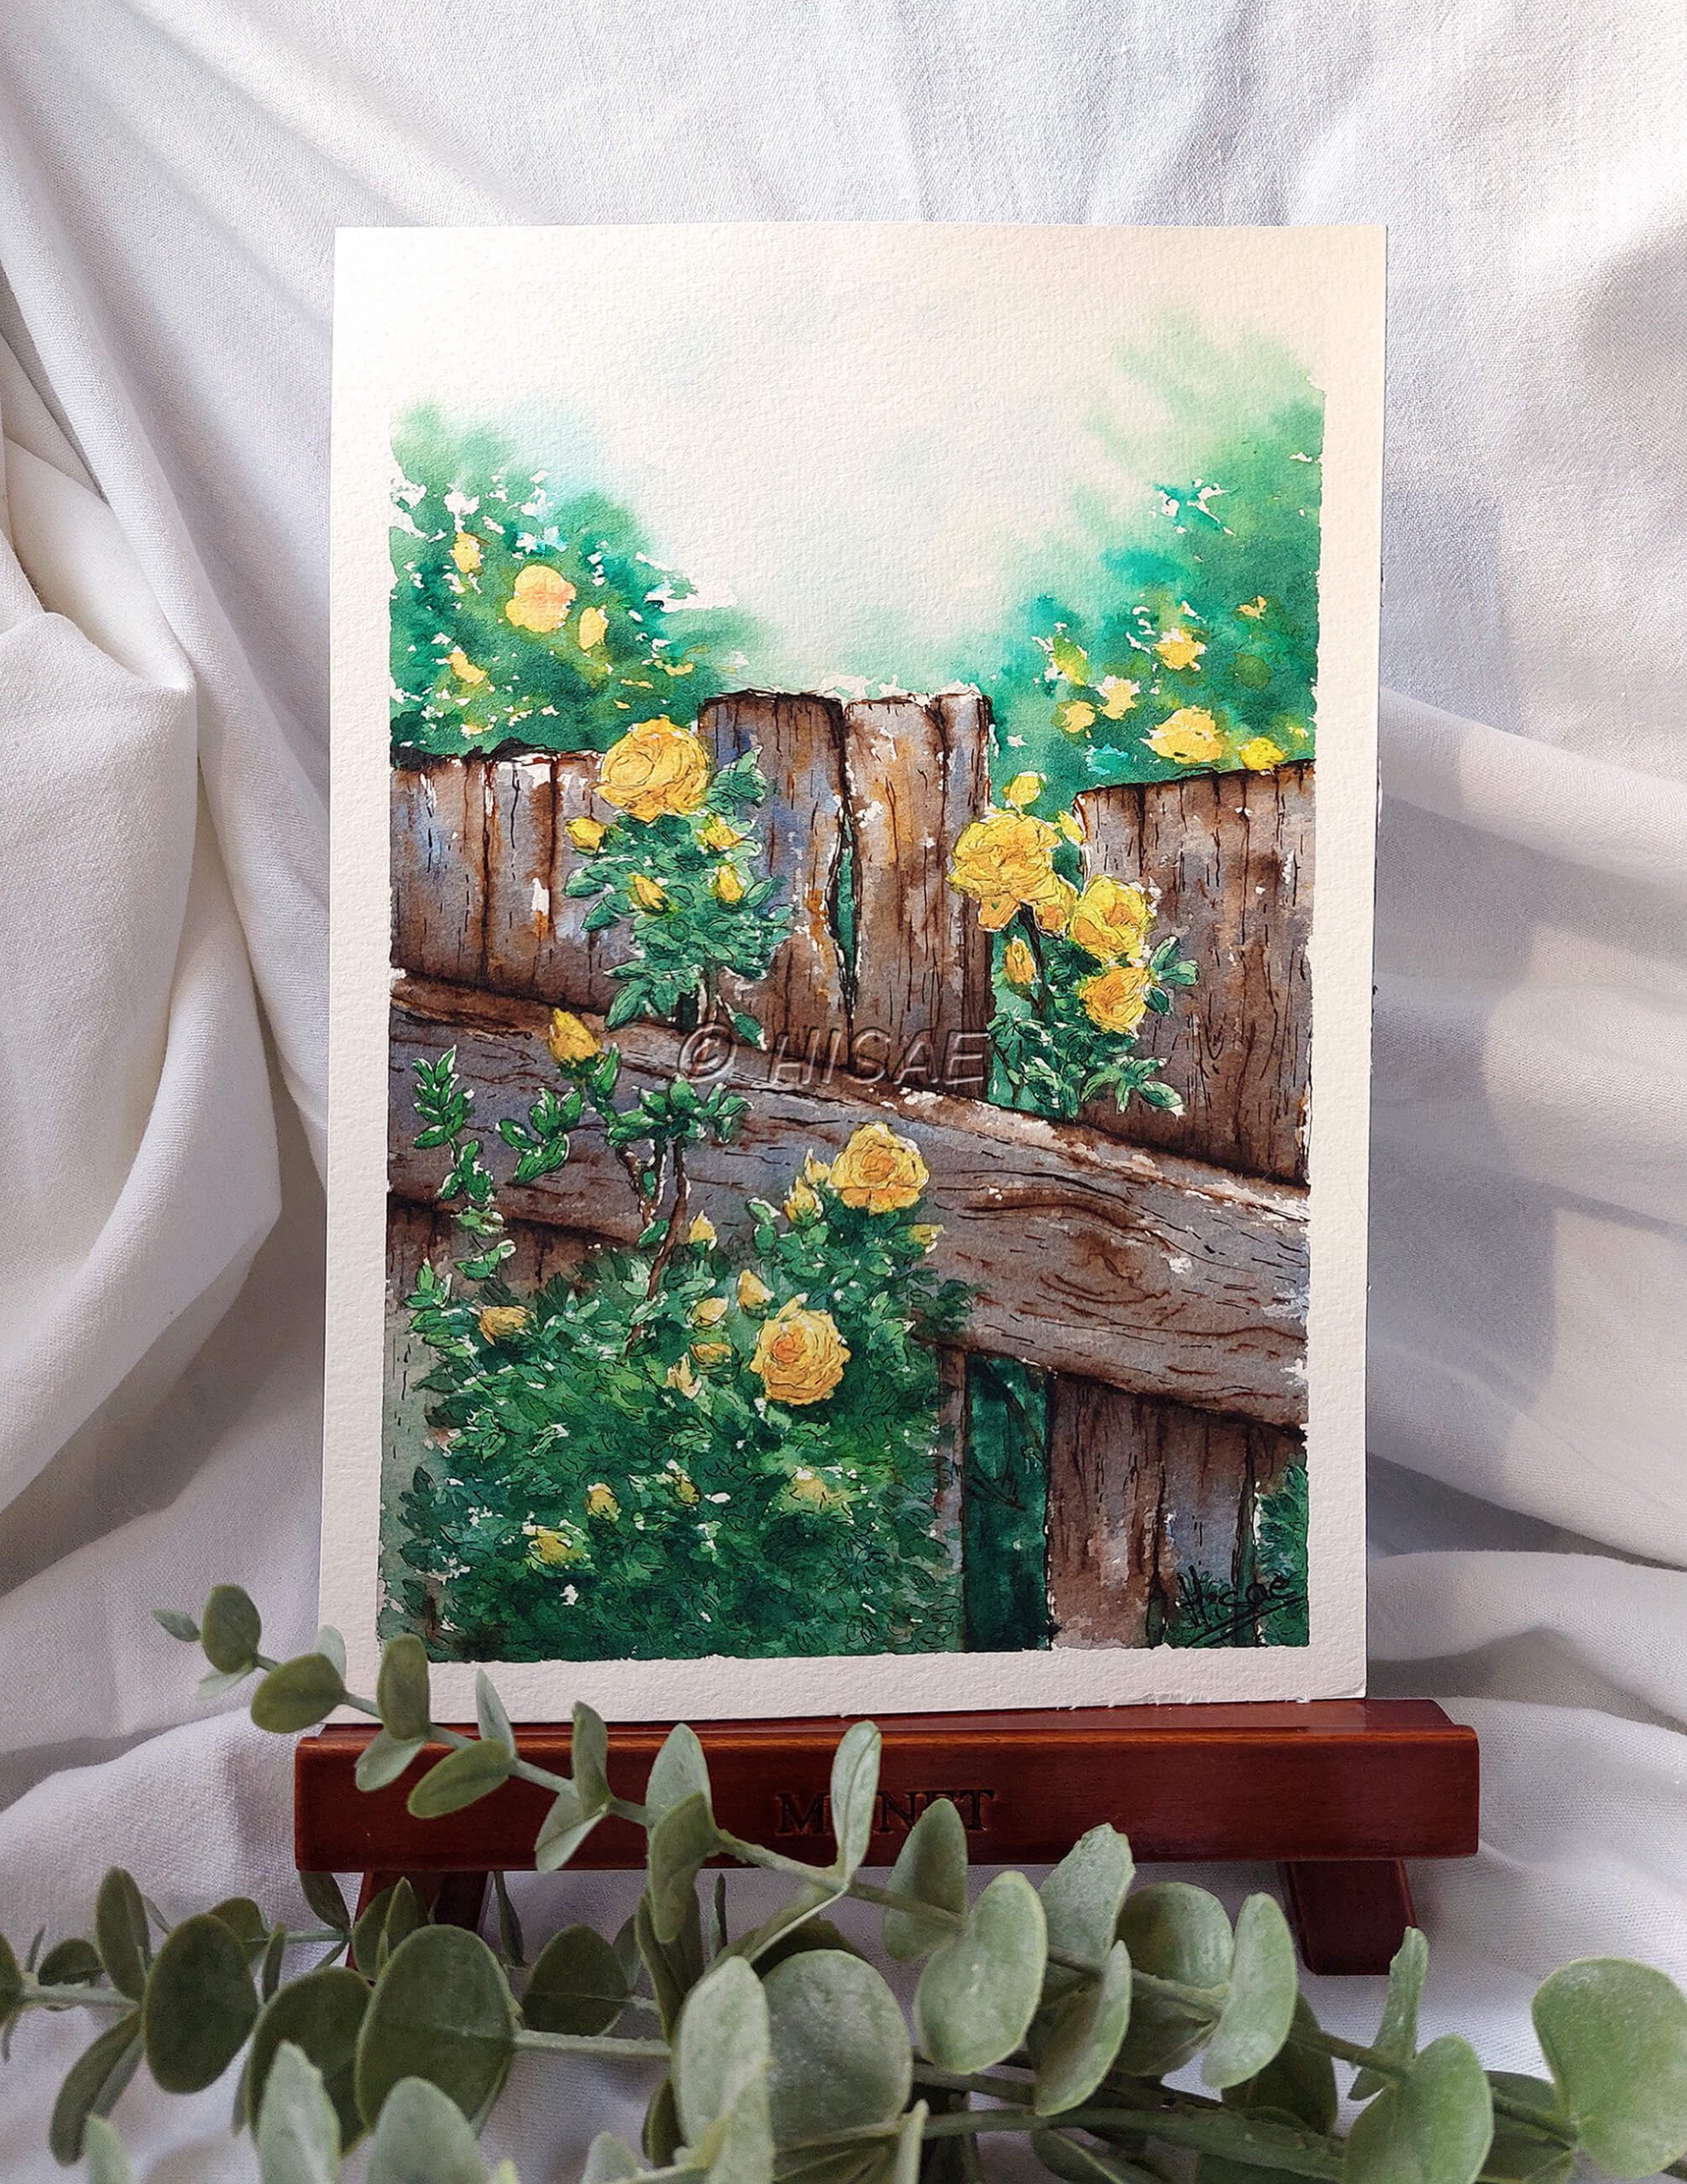 Dessin original réalisé à l'encre et à l'aquarelle, présenté sur chevalet, représentant des roses jaunes grimpant le long d'une barrière en bois @Hisae illustrations